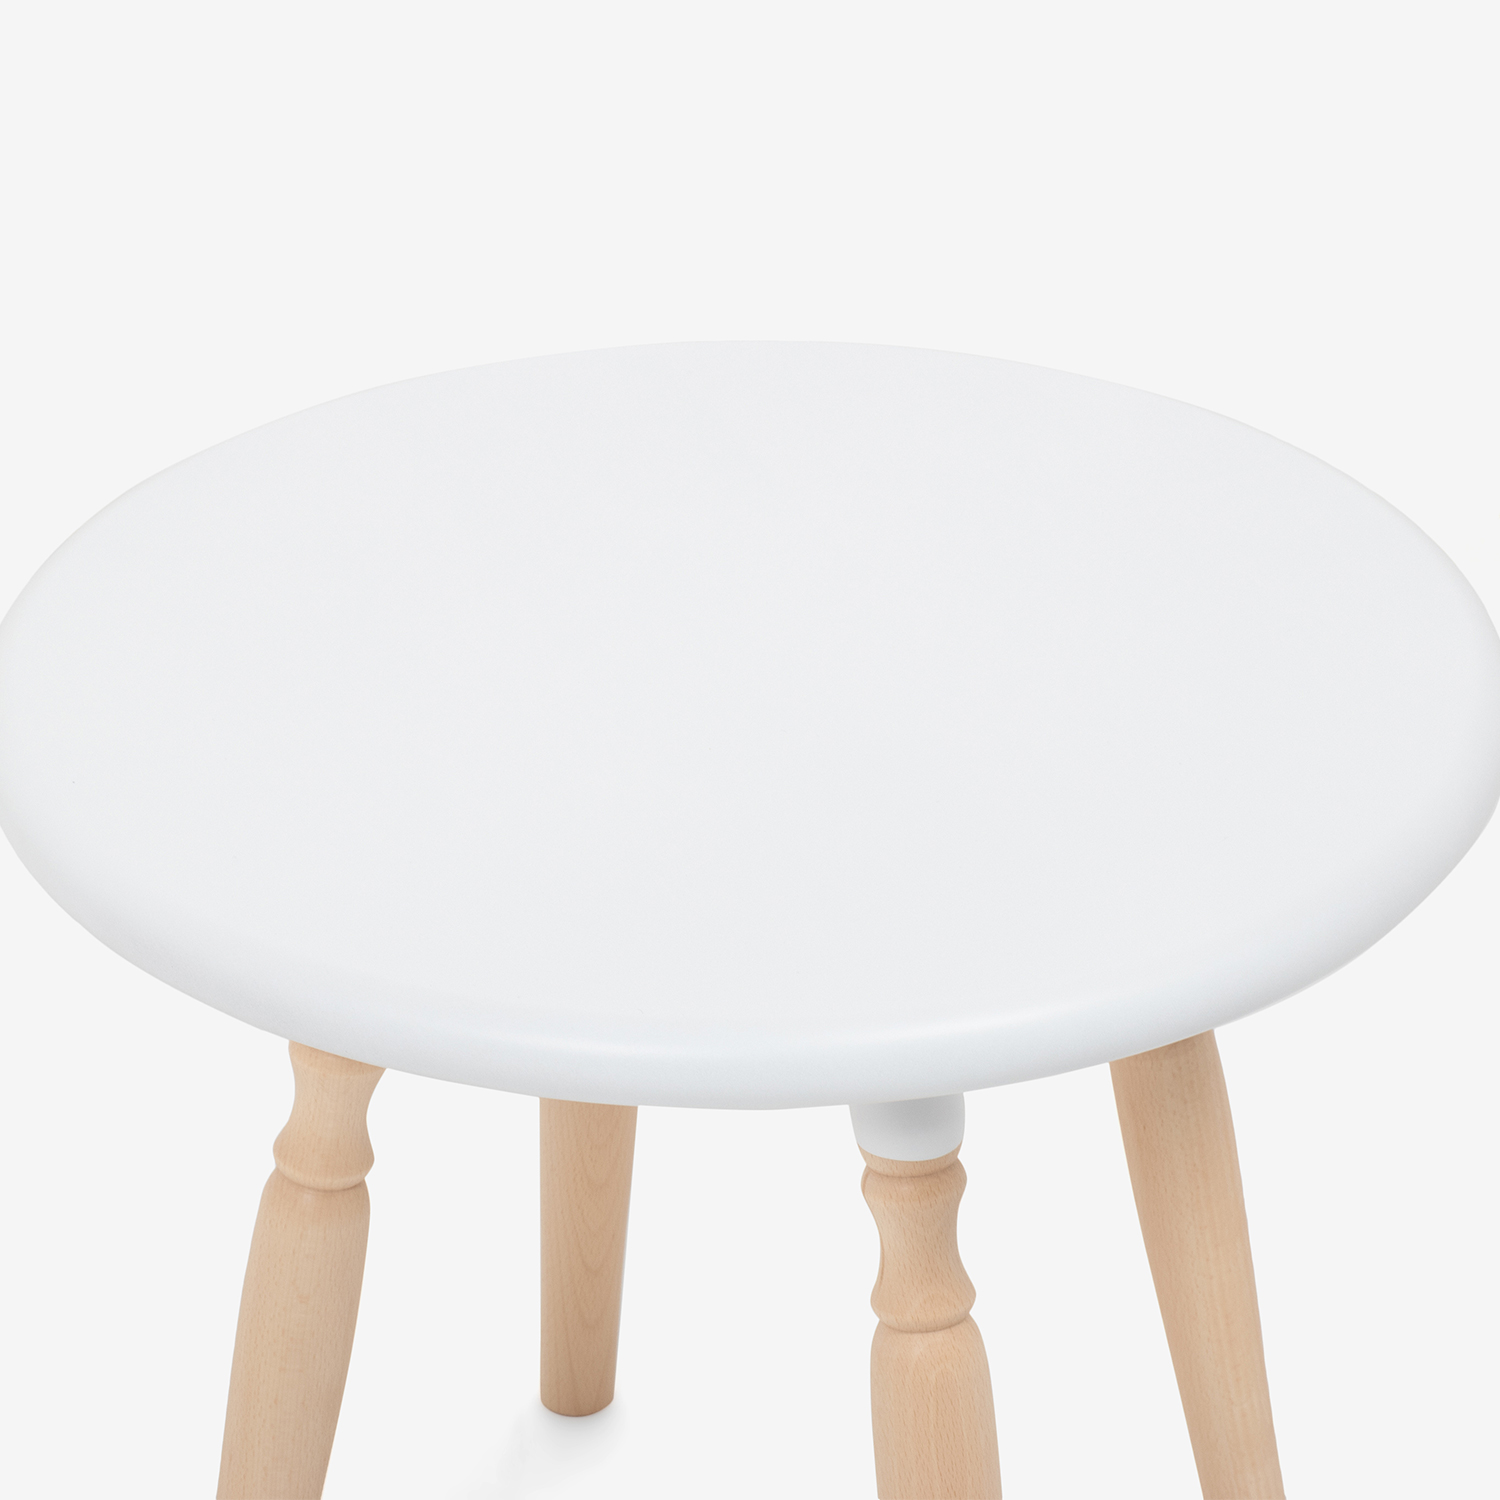 秋田木工 サイドテーブル「500EB」ブナ材ホワイト色